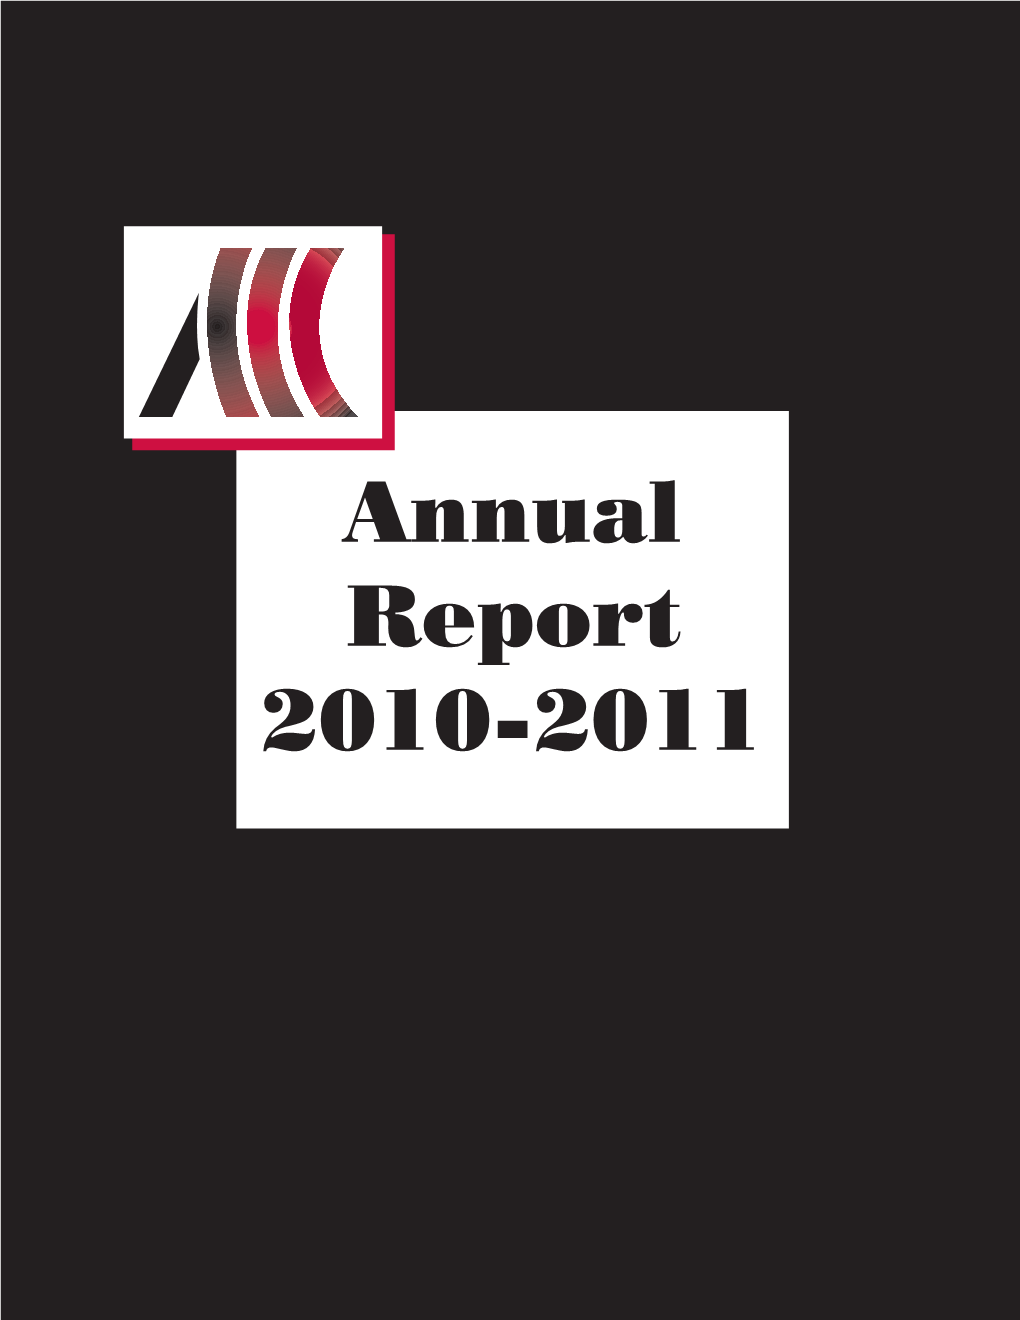 ACCC Annual Report 2010-2011